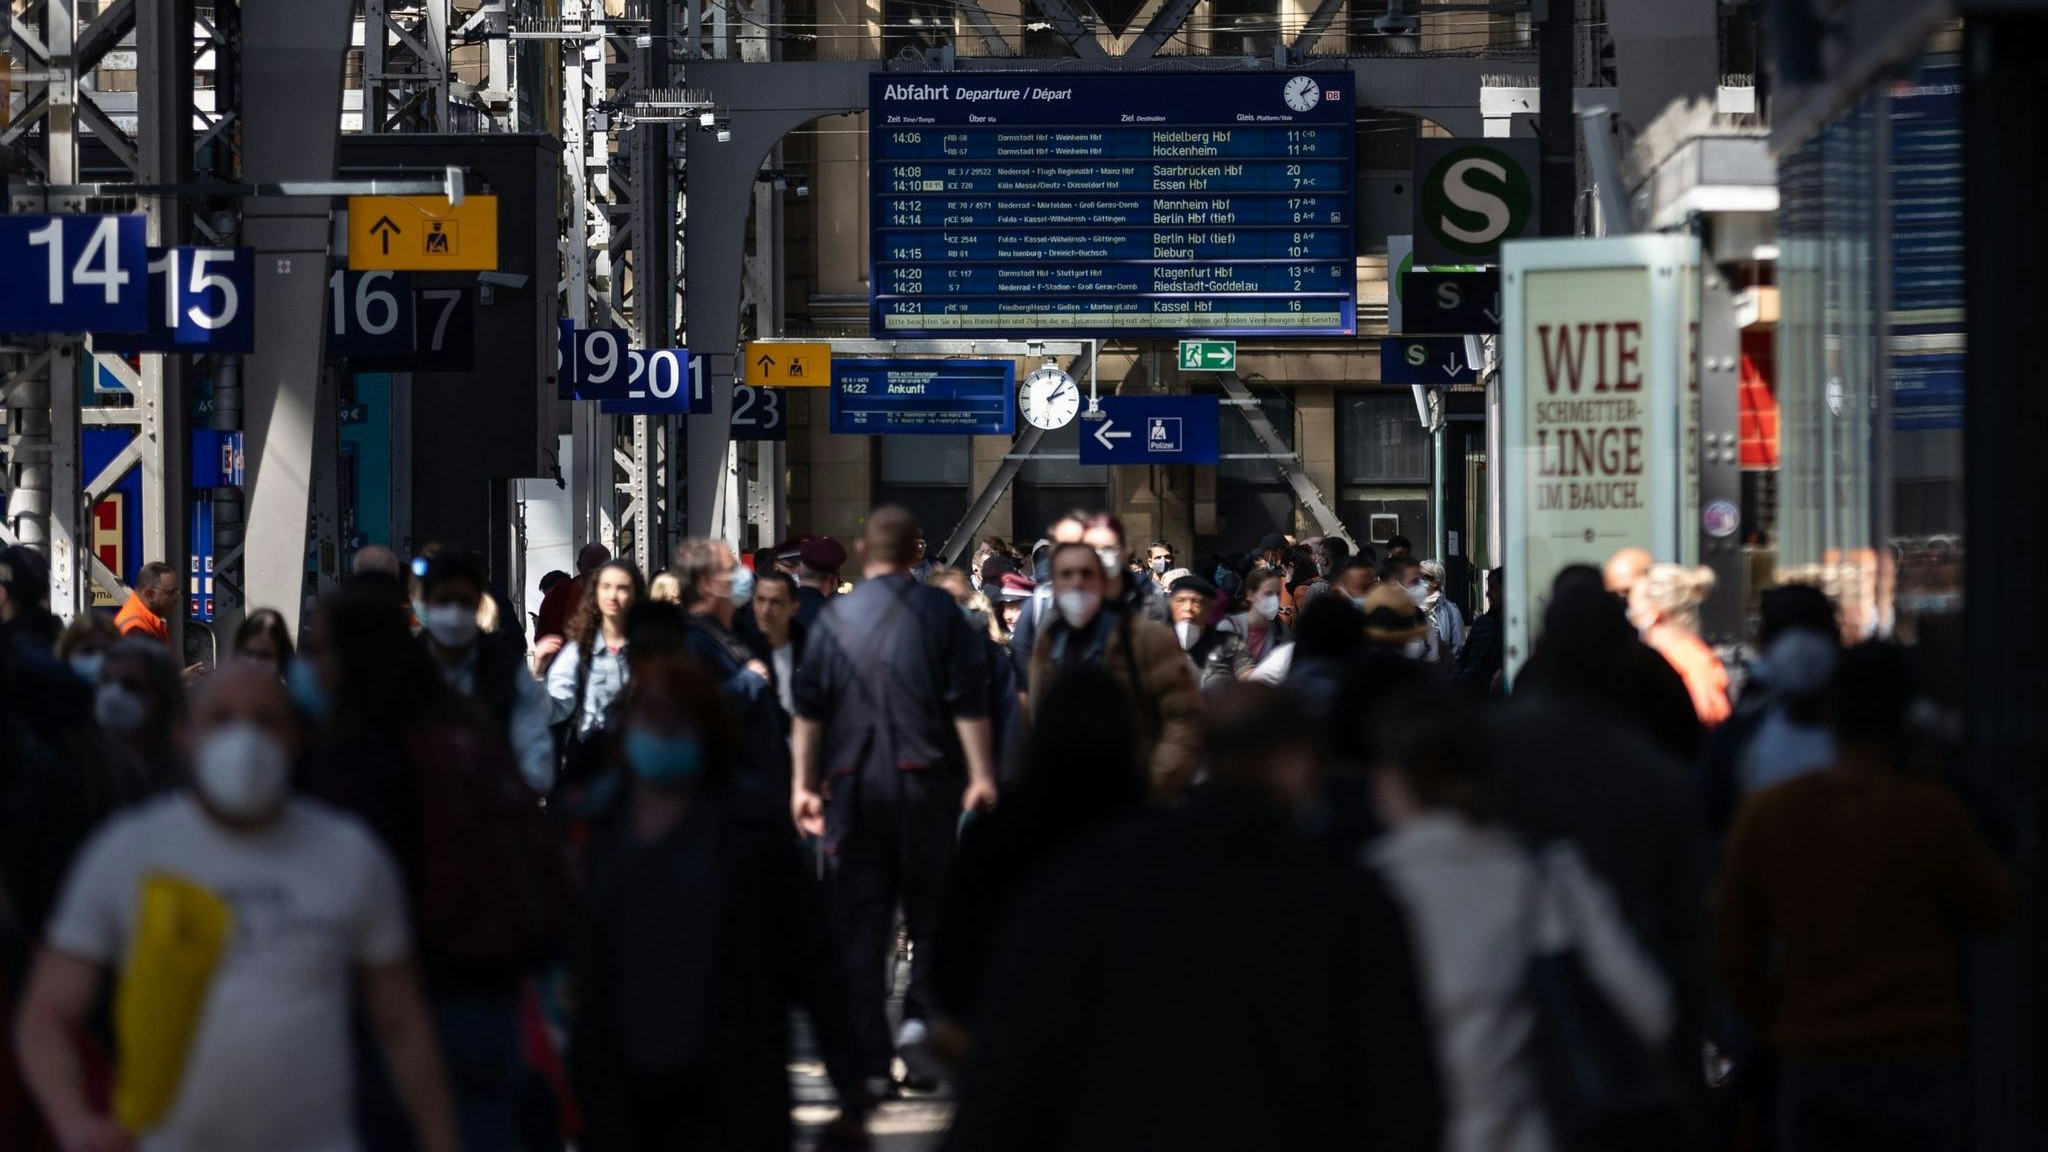 Reisende gehen durch die Bahnhofshalle in Frankfurt/Main. Die Debatte um die Maskenpflicht in öffentlichen Transportmitteln geht weiter. Foto: dpa/Albert